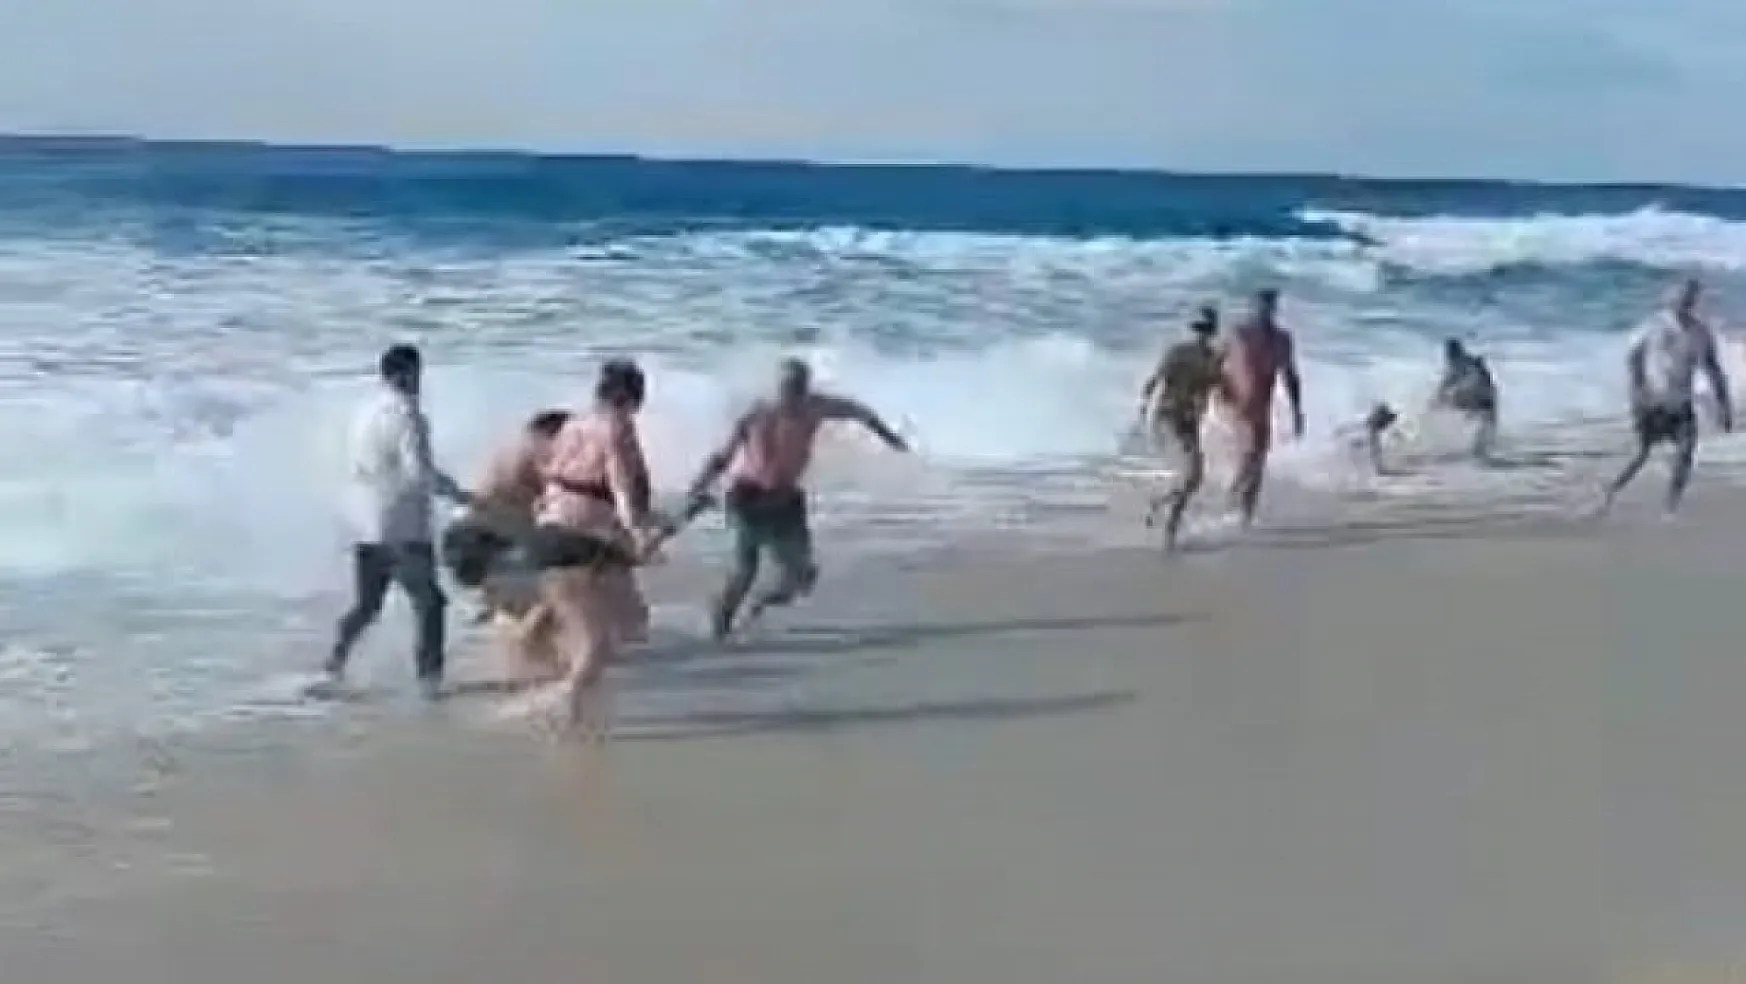 Denize giren turistlerin boğulma tehlikesi geçirdiği anlar kamerada